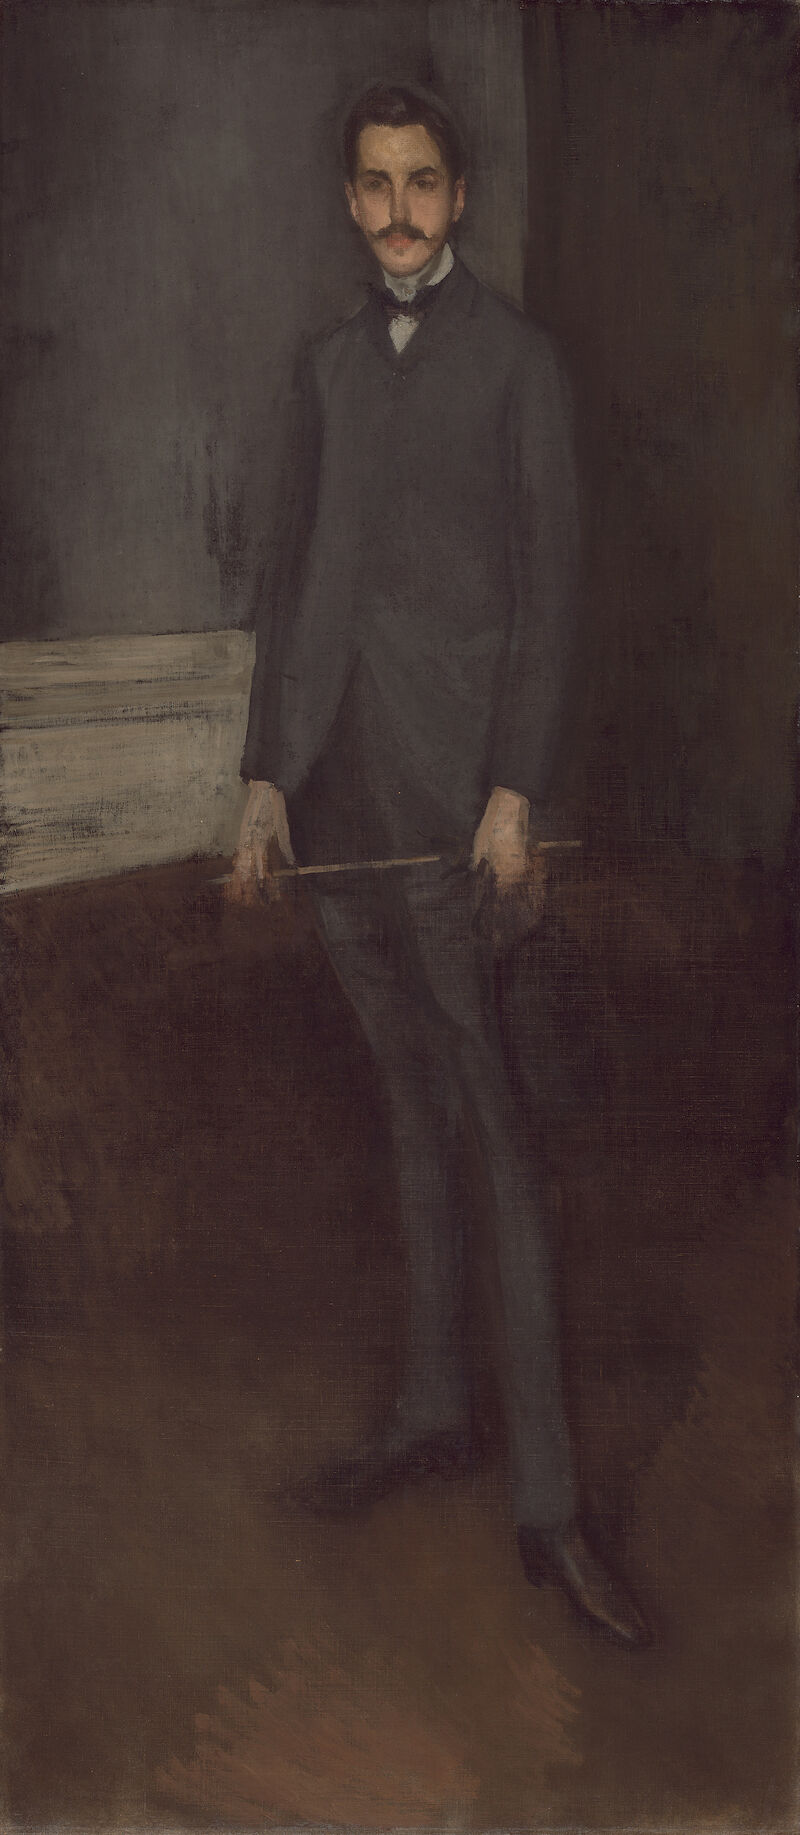 Portrait of George W. Vanderbilt, James McNeill Whistler